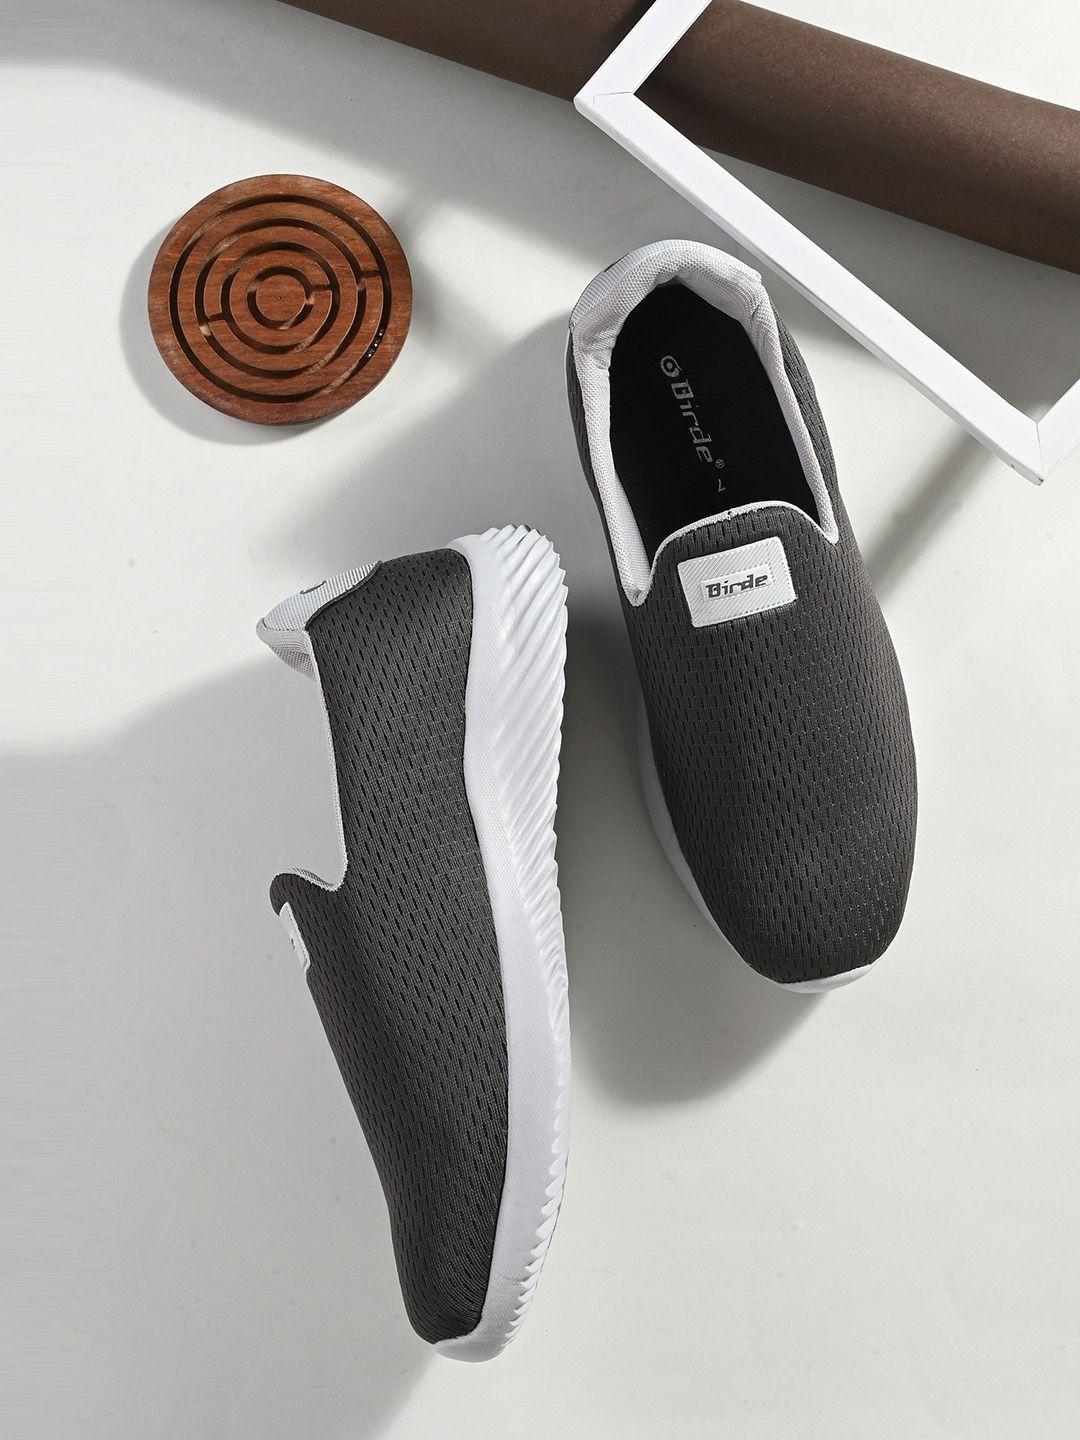 birde-men-woven-design-comfort-insole-mesh-contrast-sole-slip-on-sneakers